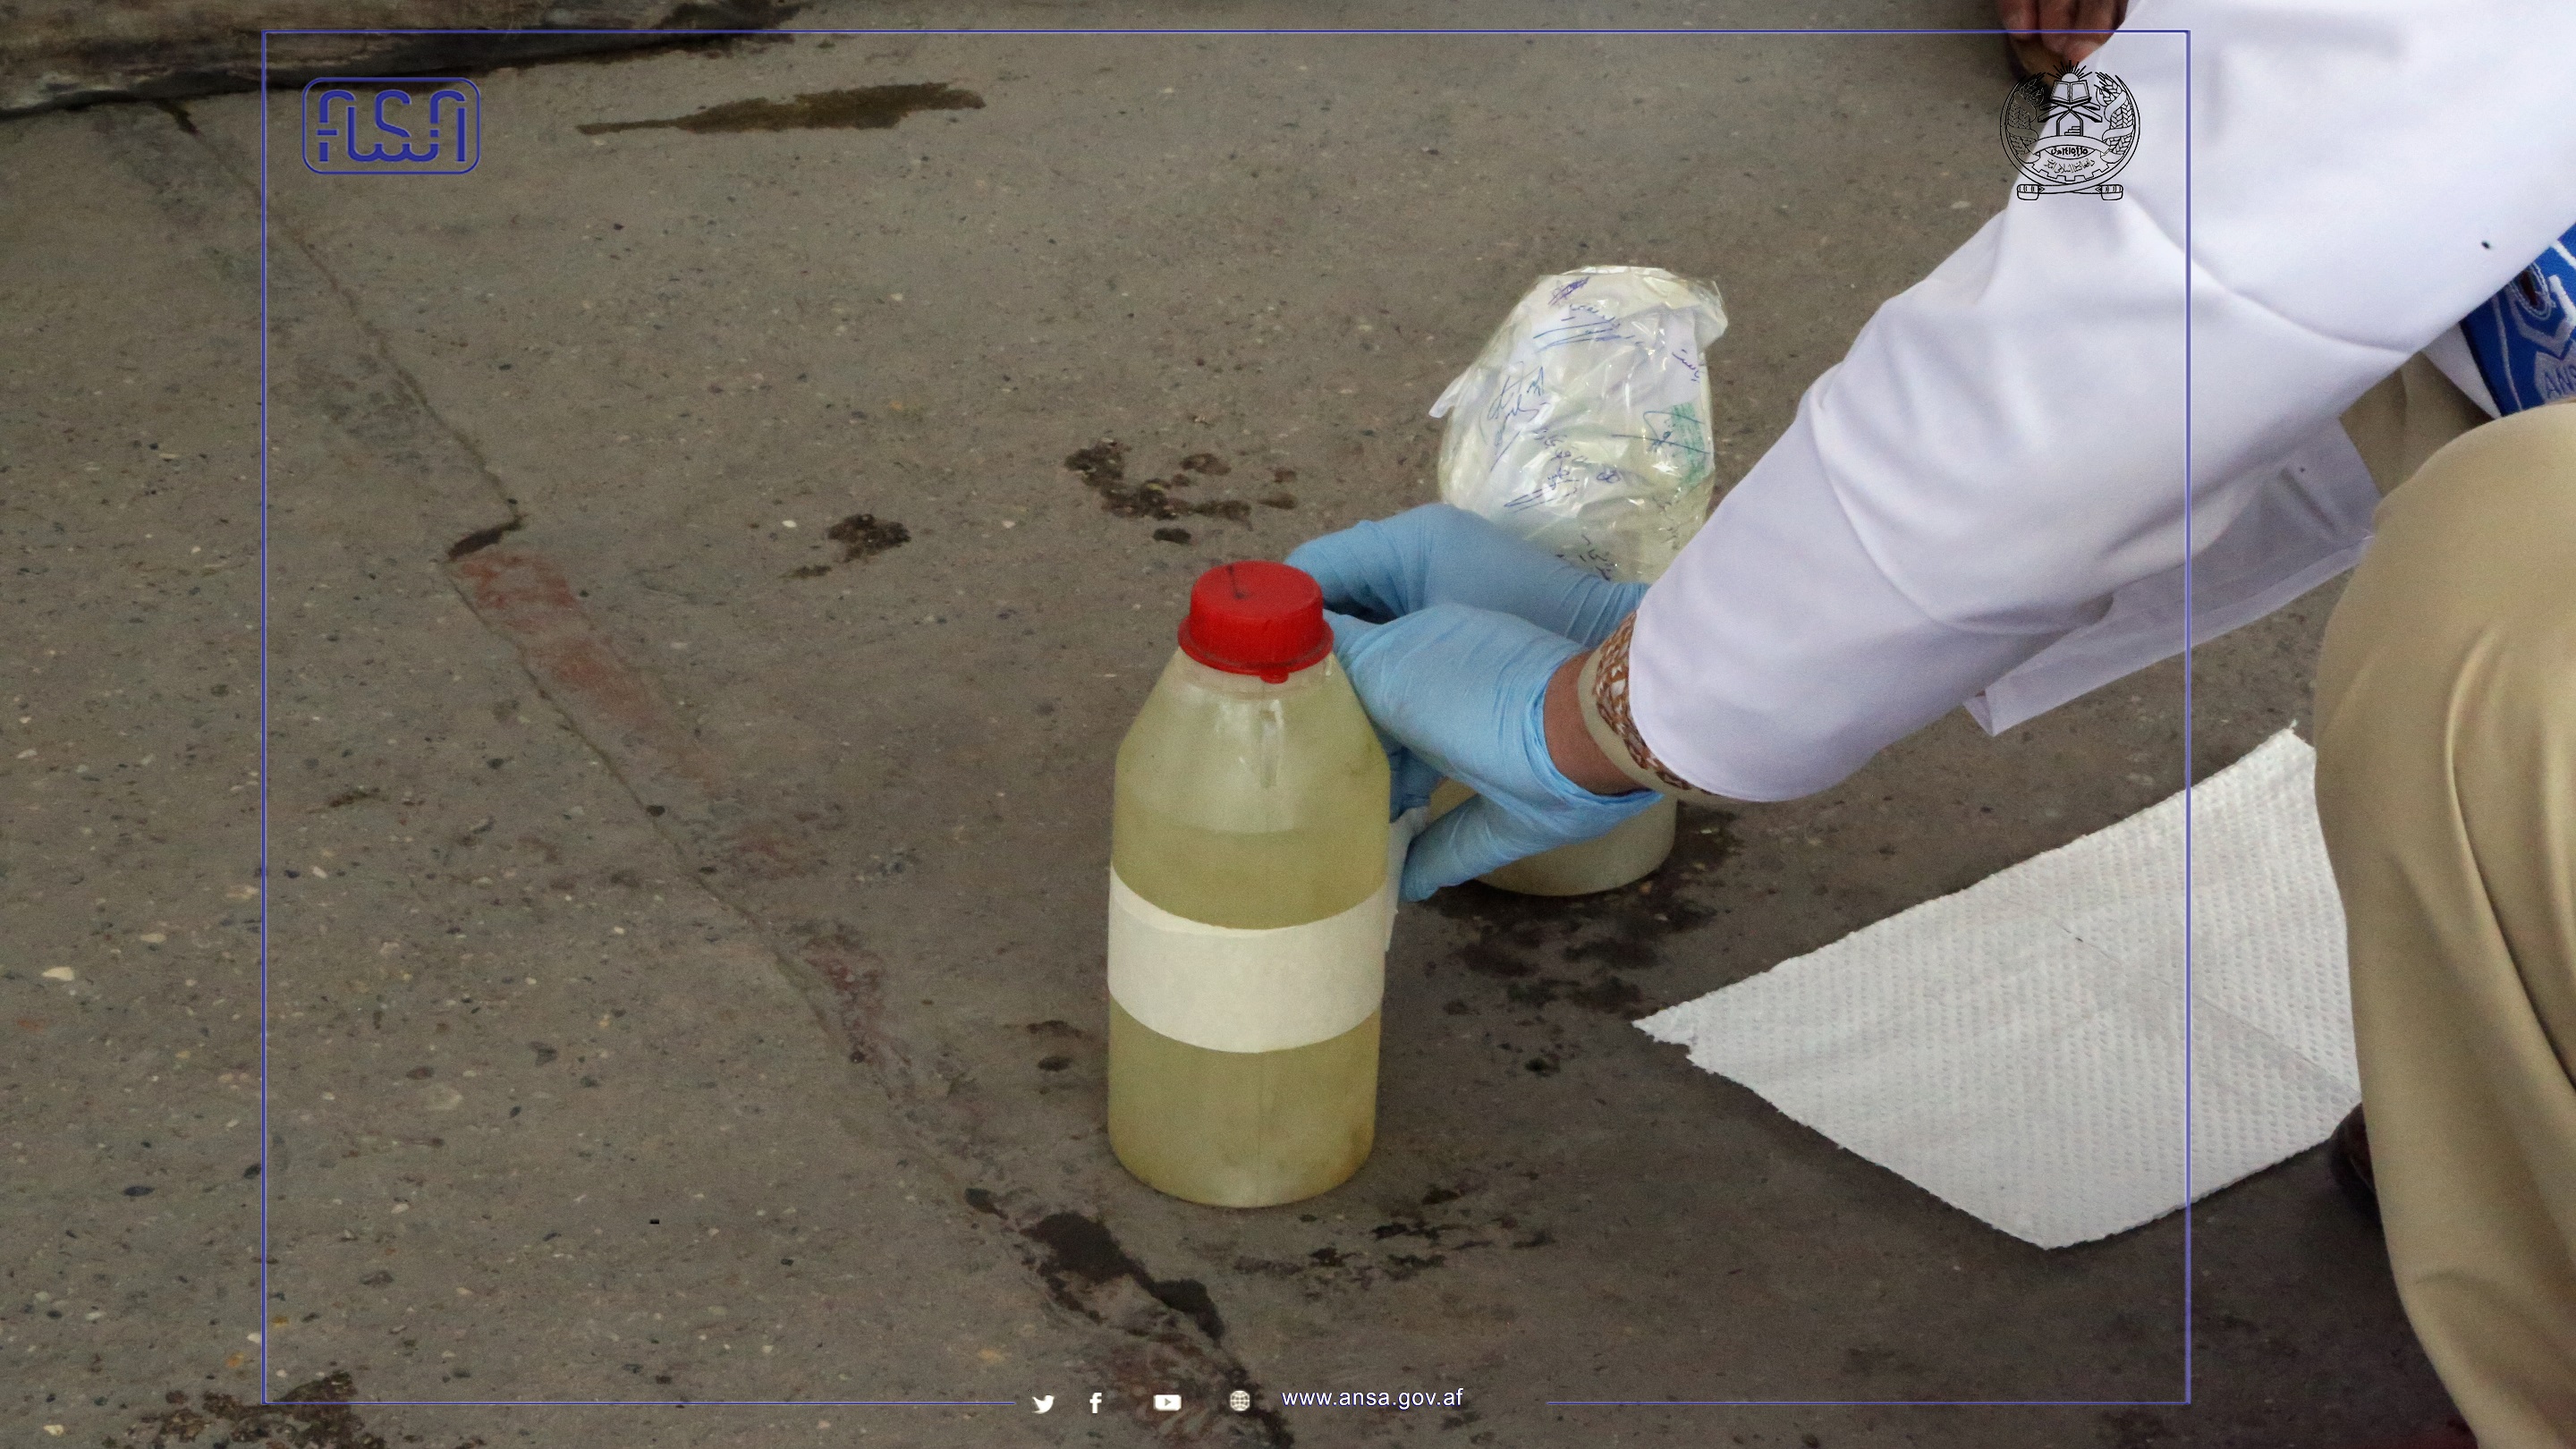 آغاز نظارت از کیفیت مواد نفتی پمپ ستیشن های شهر جلال آباد از سوی اداره ملی ستندرد